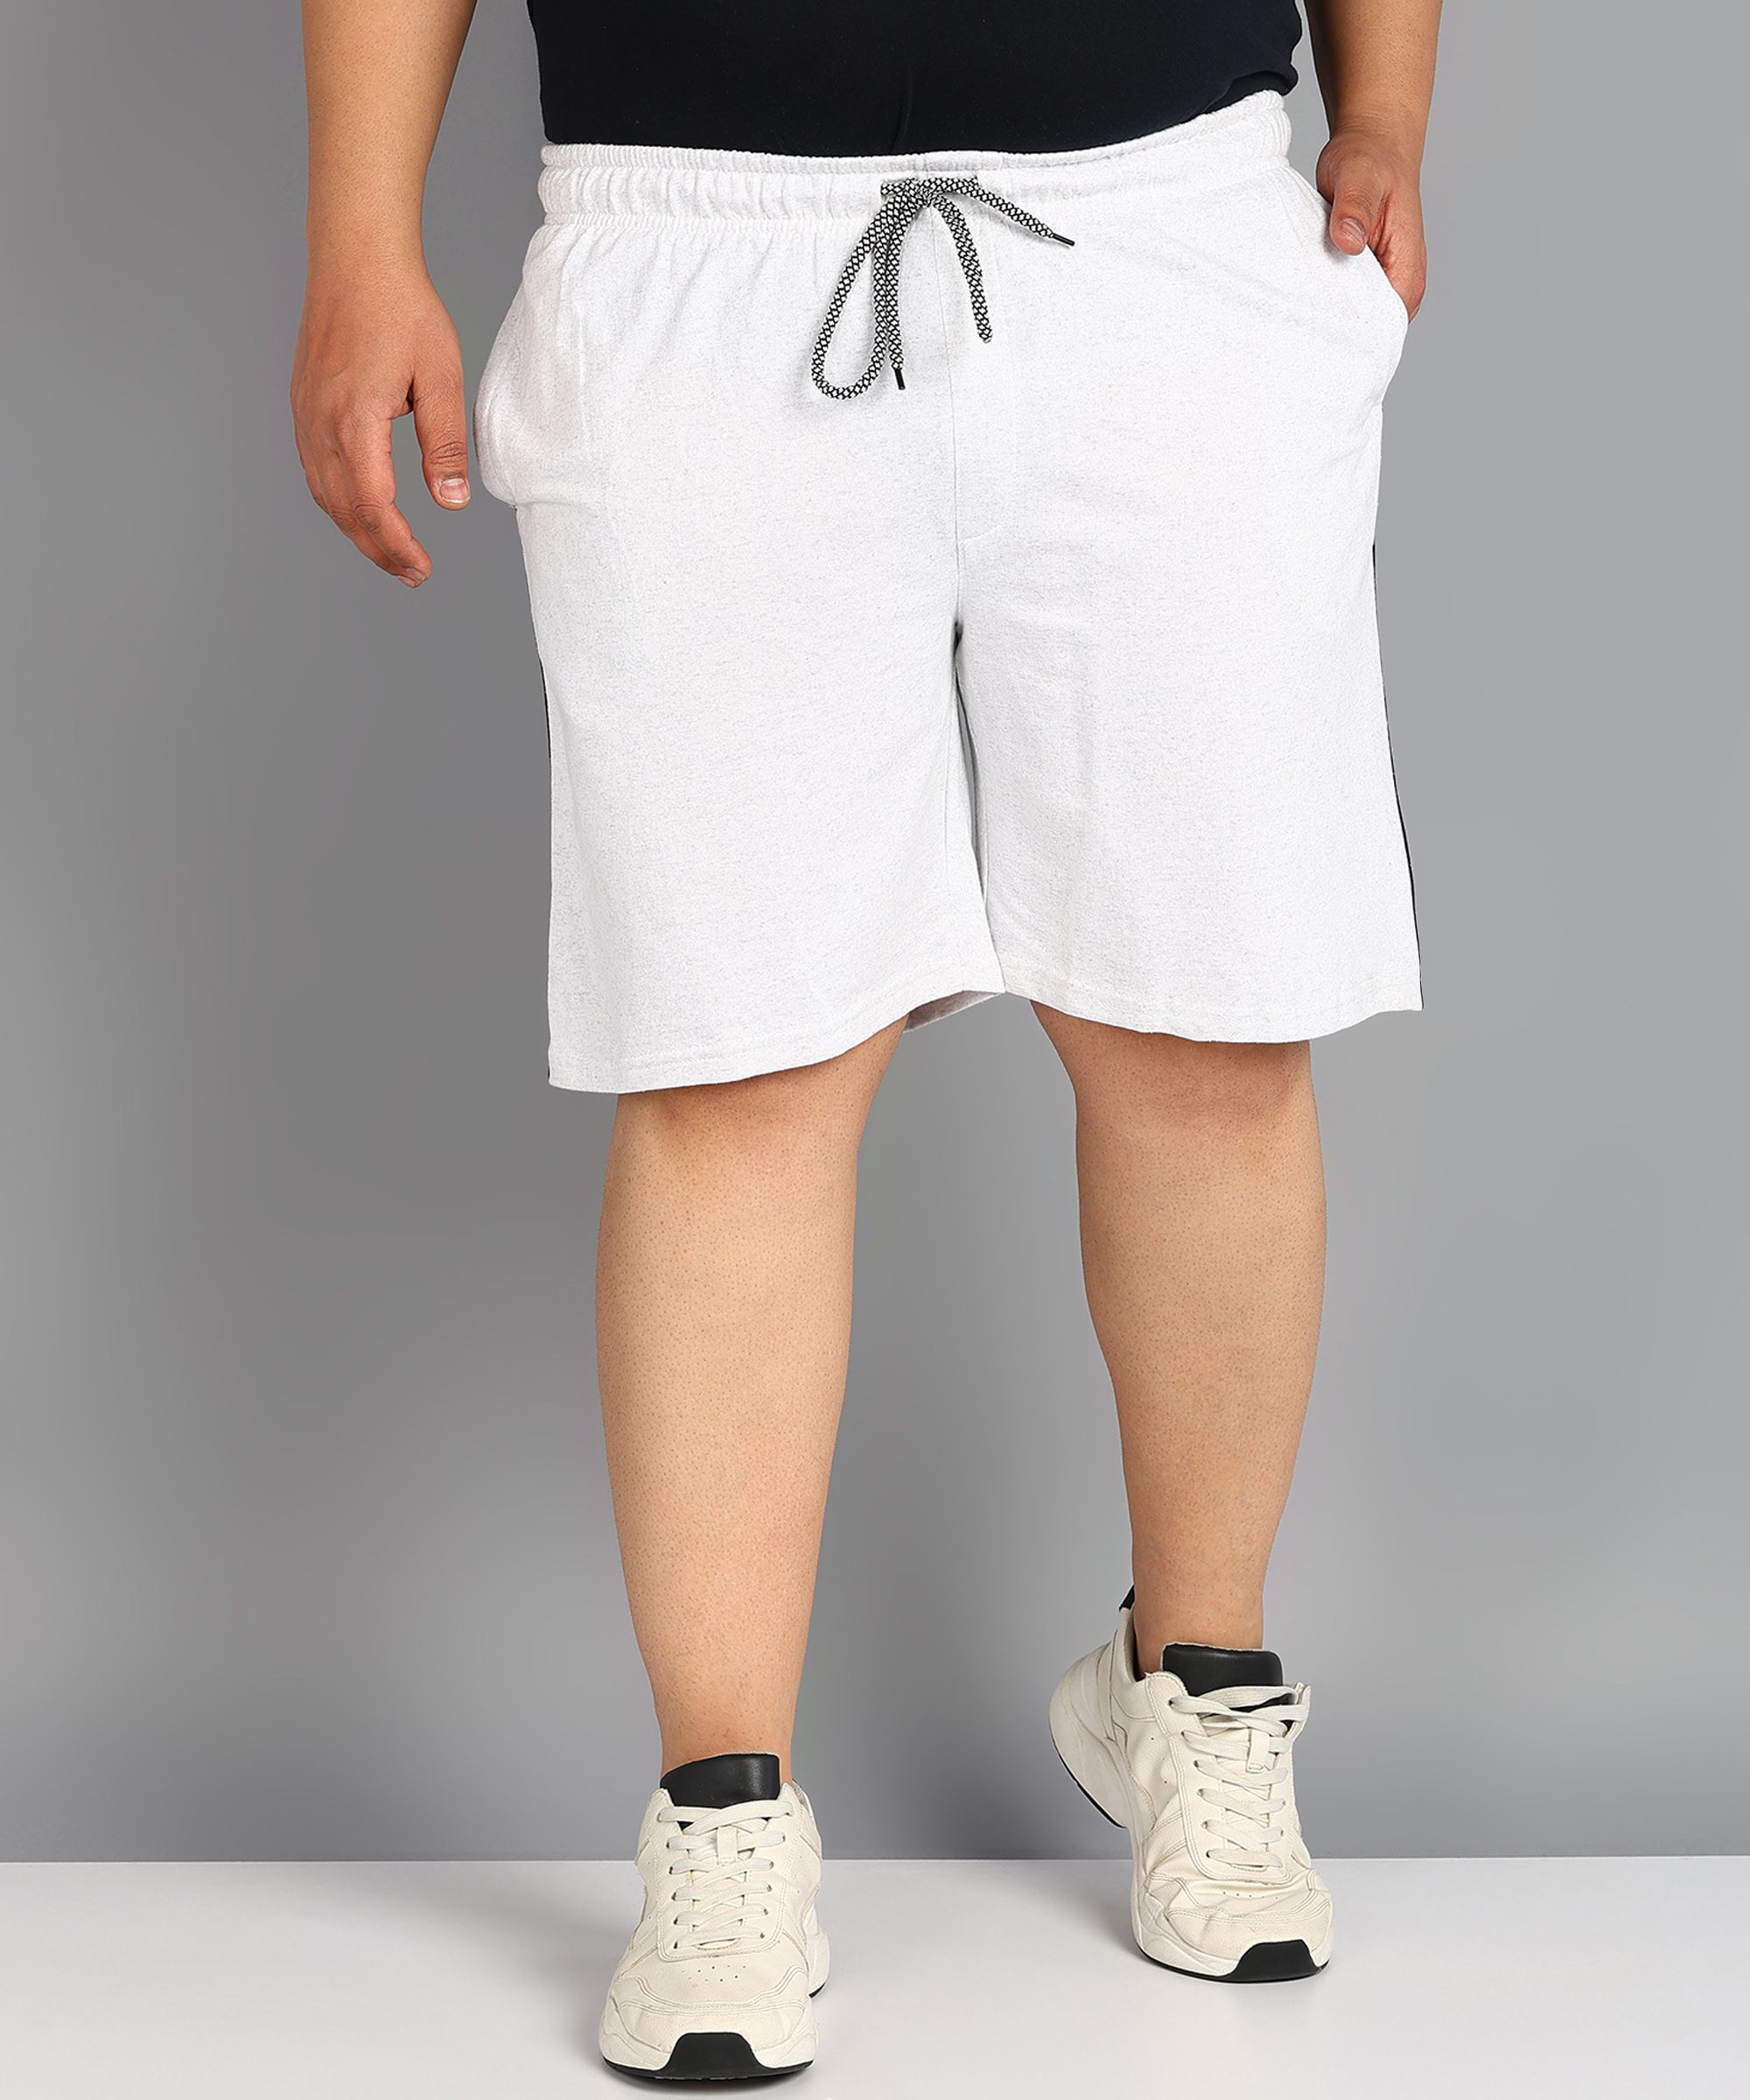     			XFOX White Blended Men's Shorts ( Pack of 1 )